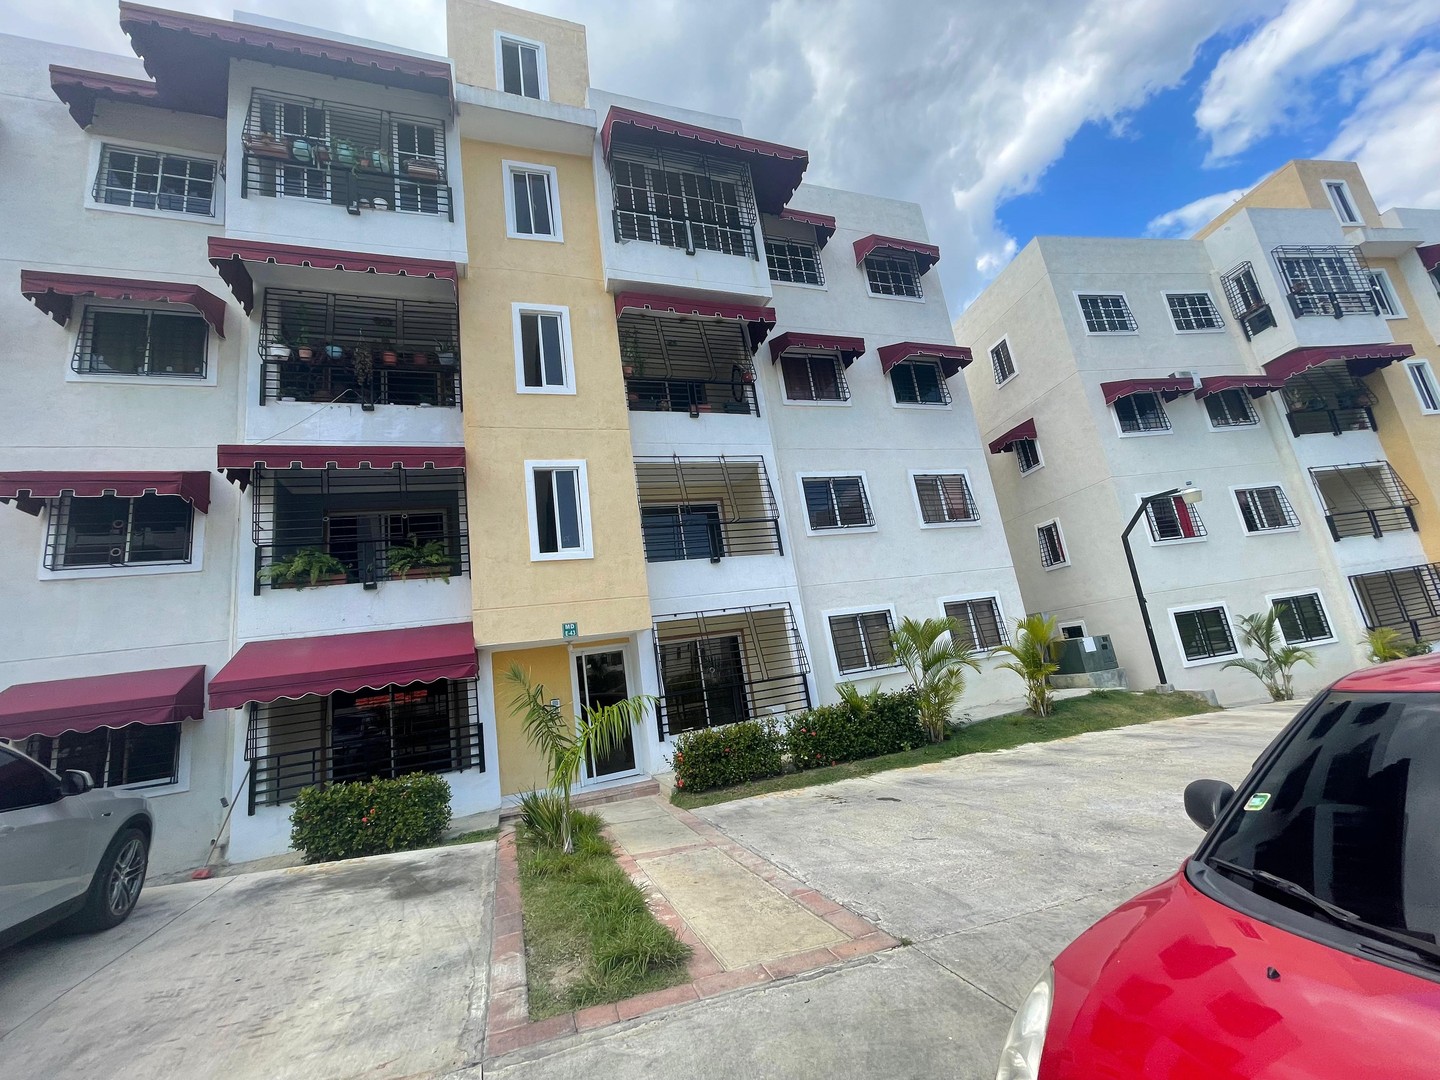 apartamentos - Apartamento en Alquiler Av Jacobo Majluta Res Jardínes del Arroyo

